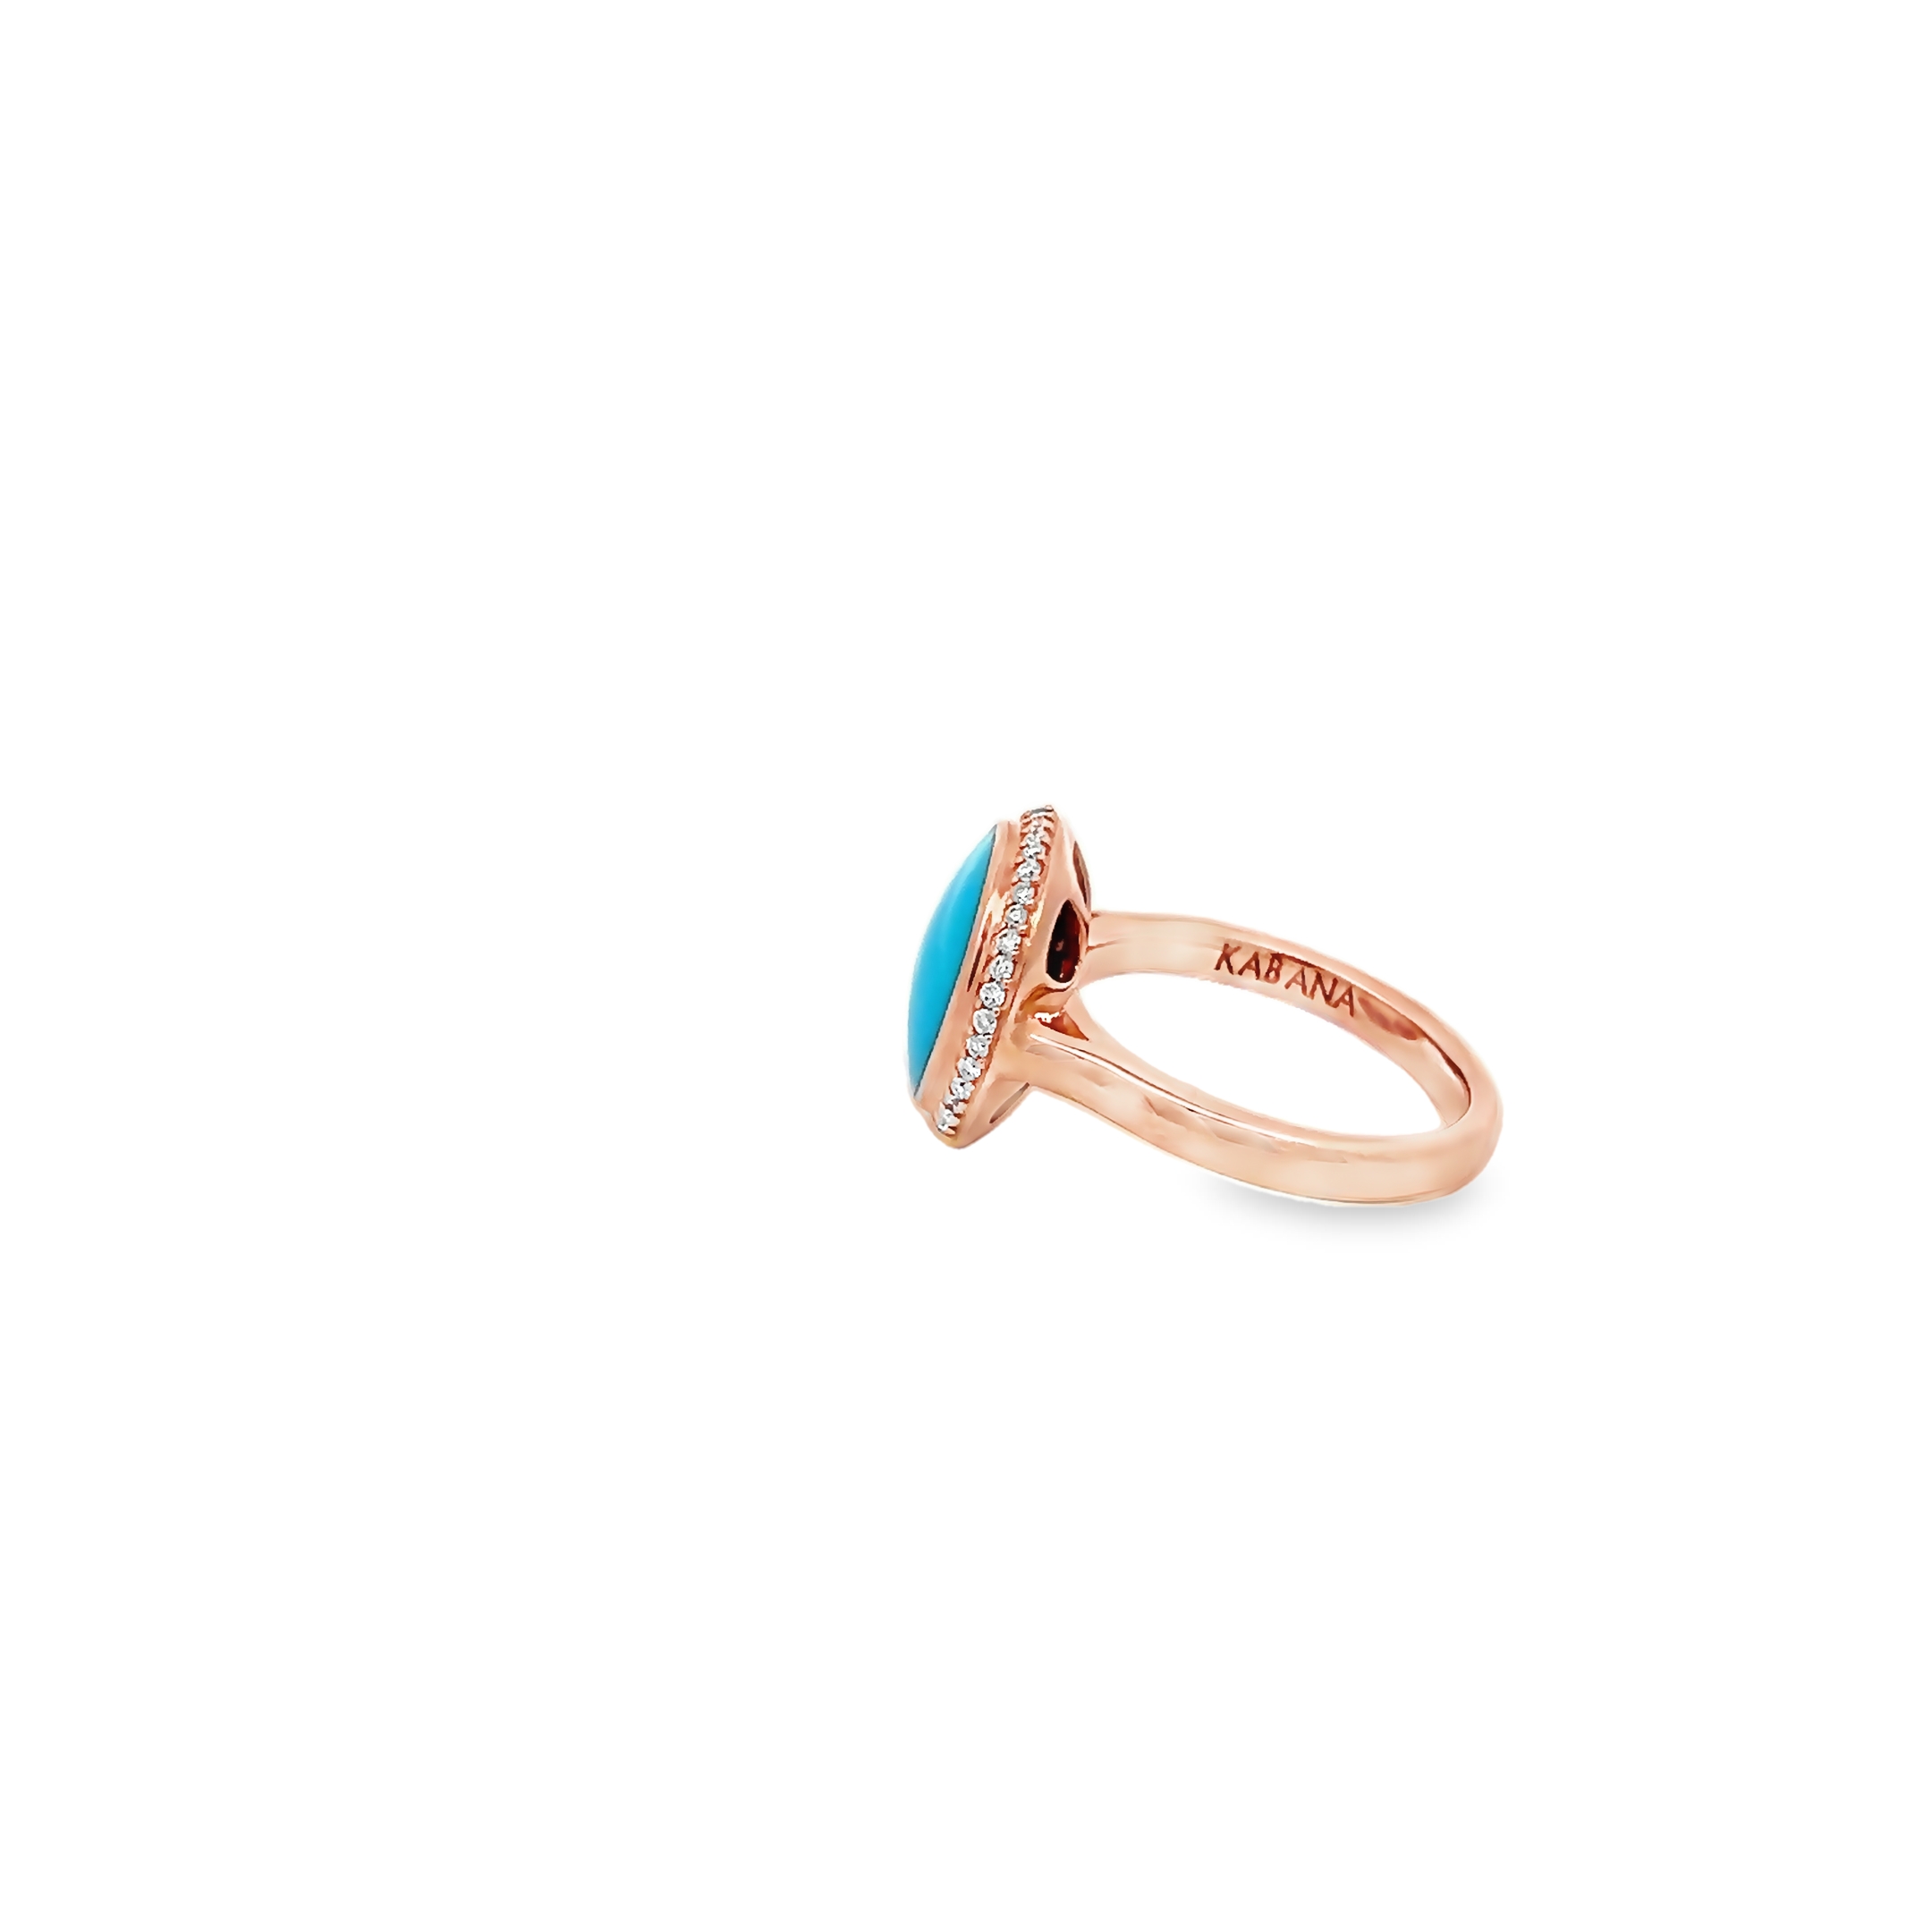 14k Rose Gold Turquoise Ring